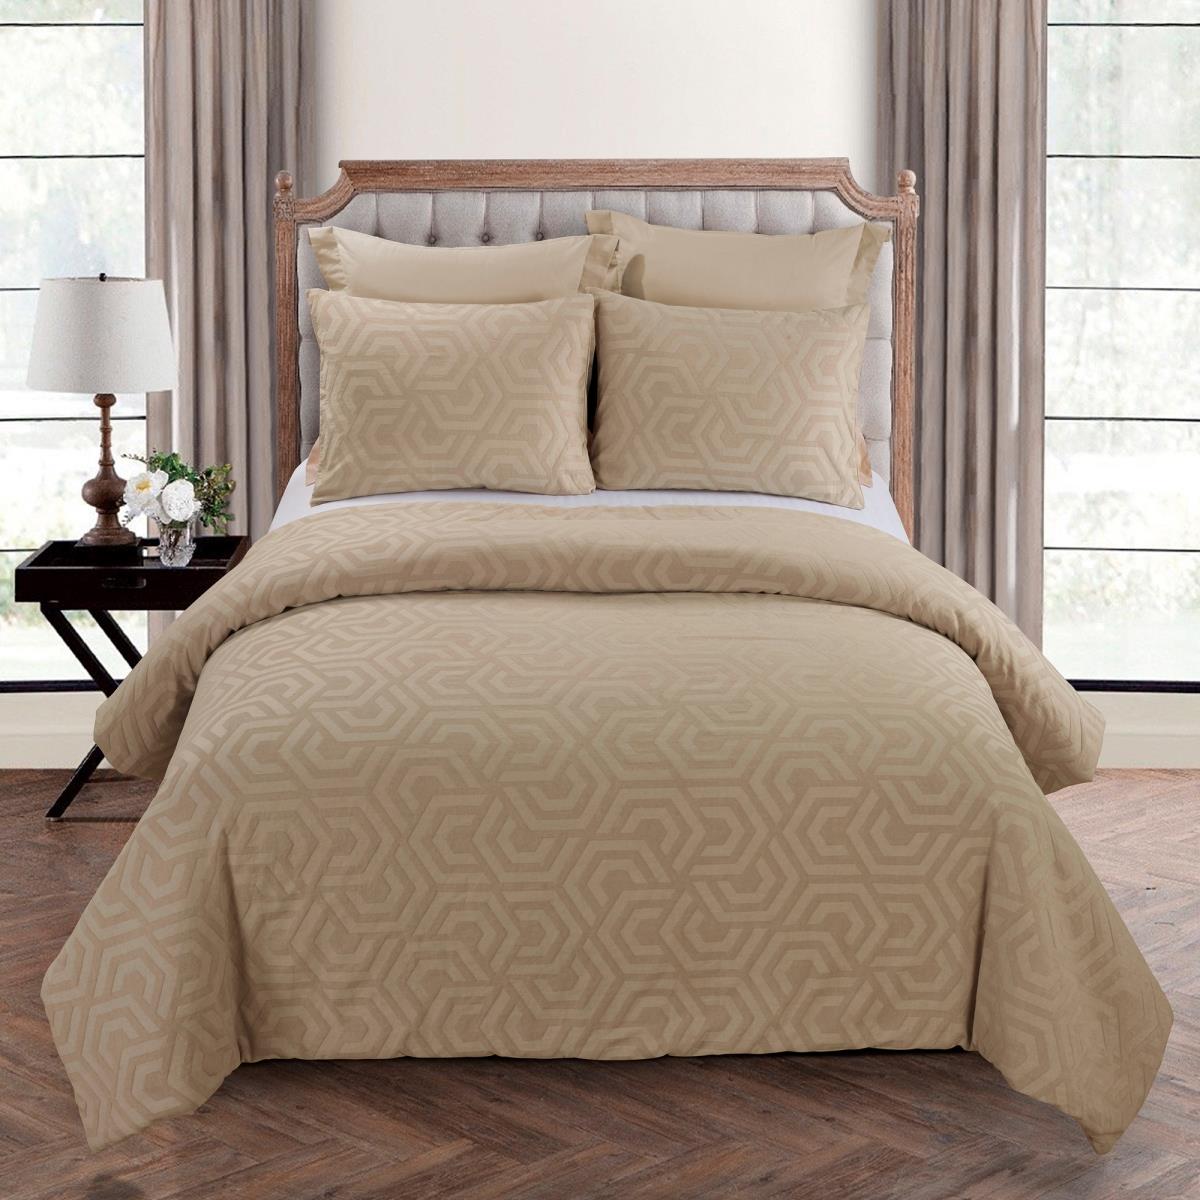 Y00715 King Size Comforter Set - Seville Sand